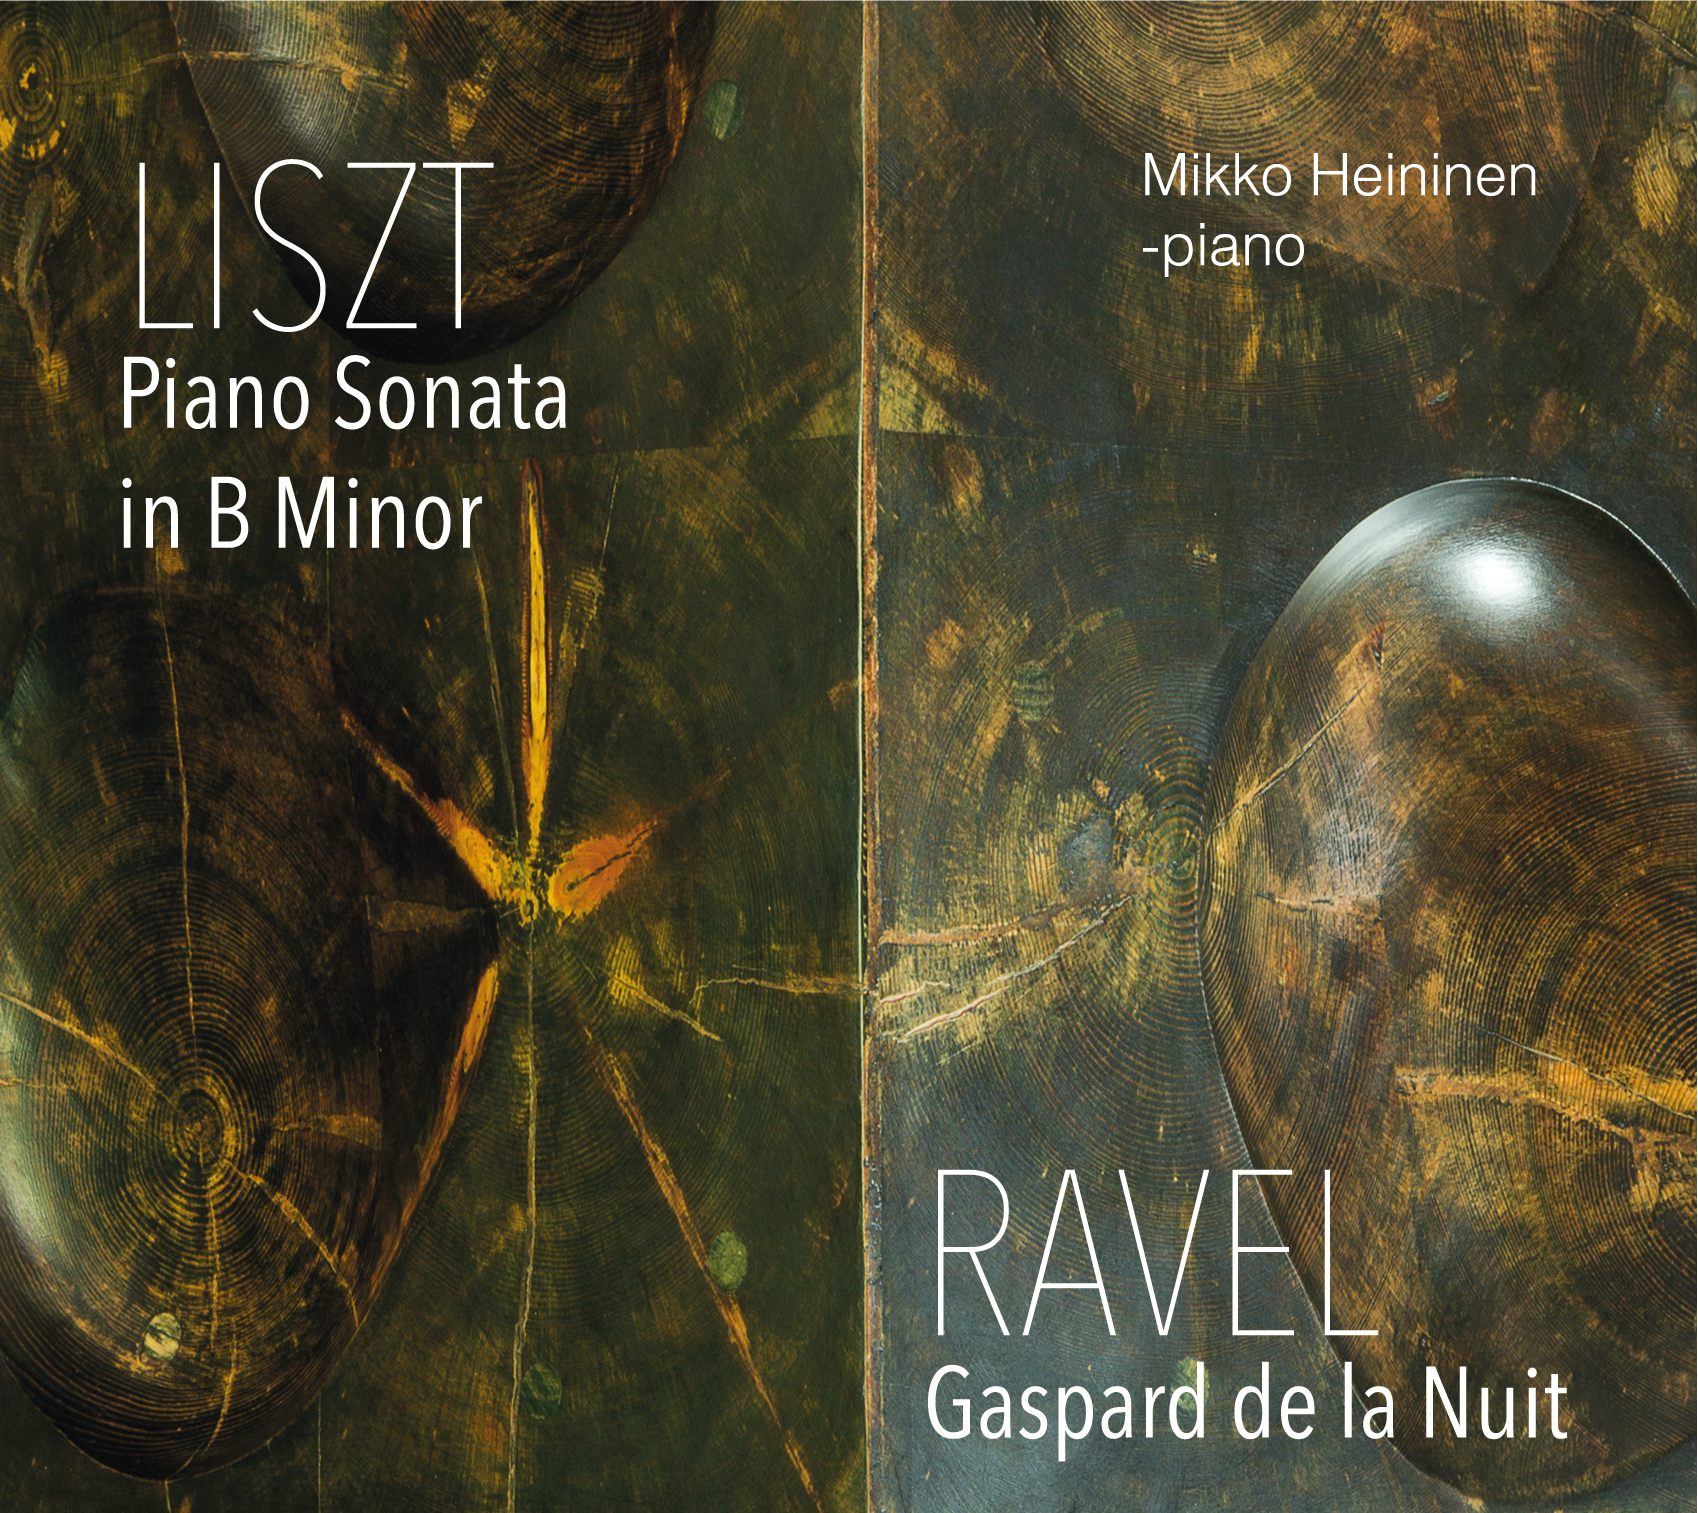 Listzt-Ravel CD-cover